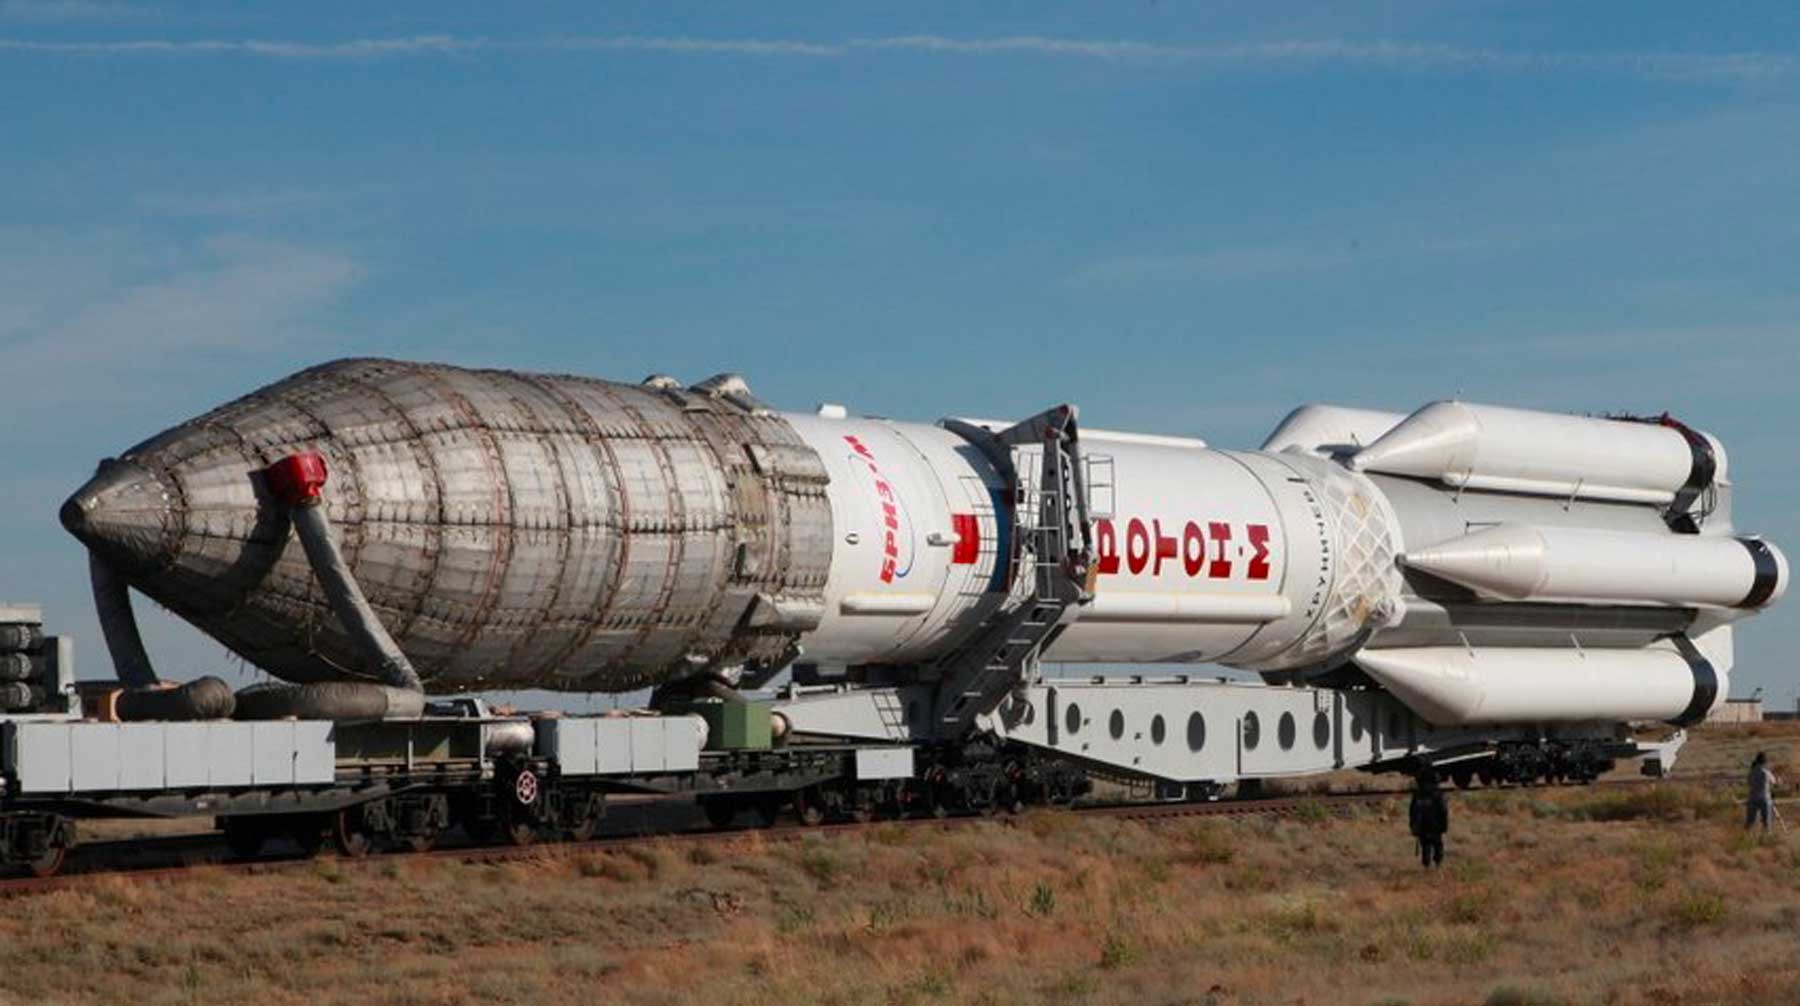 Dailystorm - Рогозин назвал ракету «Протон-М» «серьезным мужиком» и пригласил женщин на отбор космонавтов